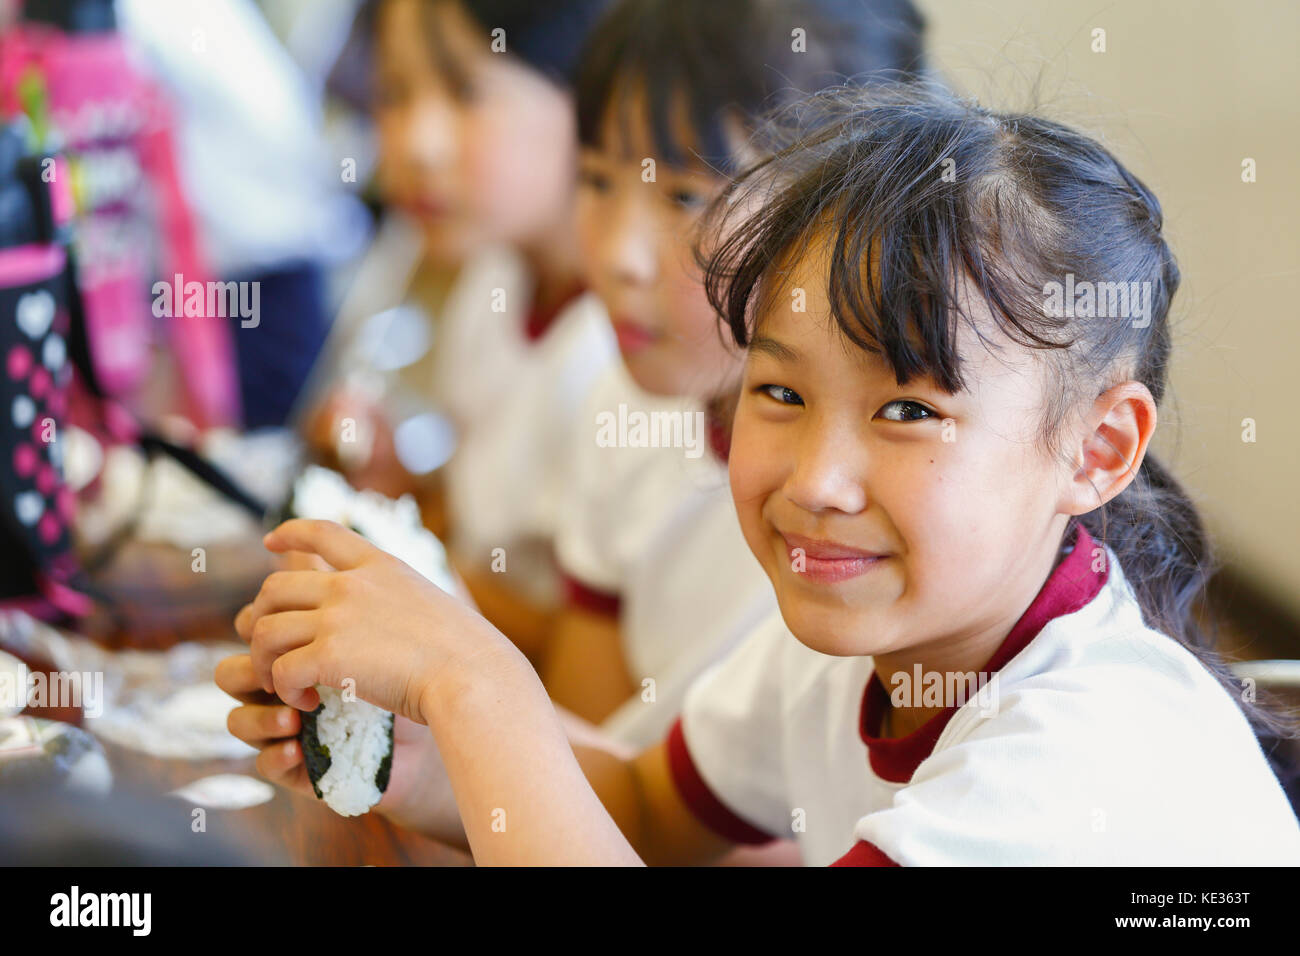 Giapponese scuola elementare i bambini a mangiare in classe Foto Stock